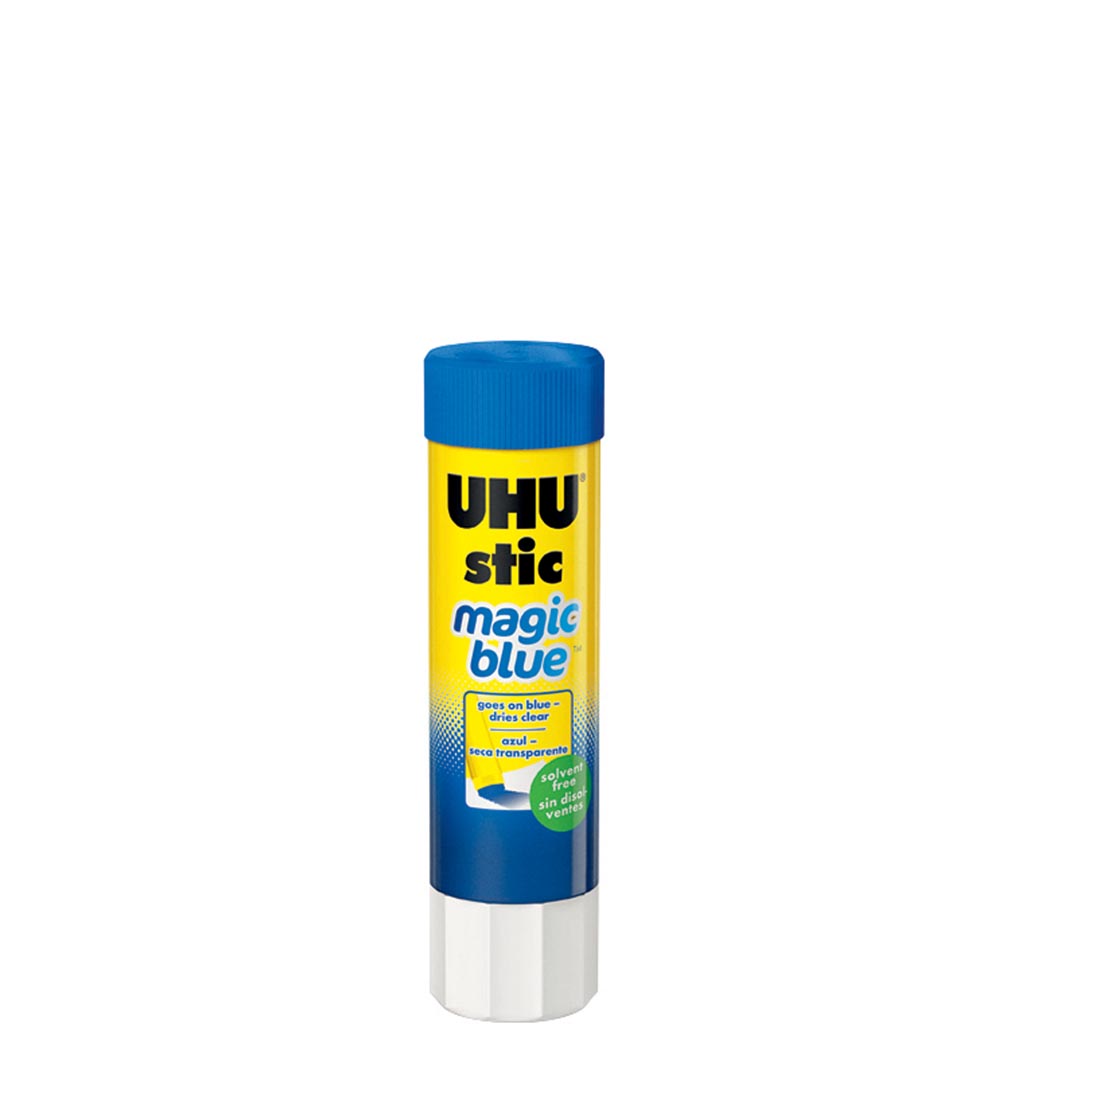 UHU Stic Magic Blue Colored Glue Stick